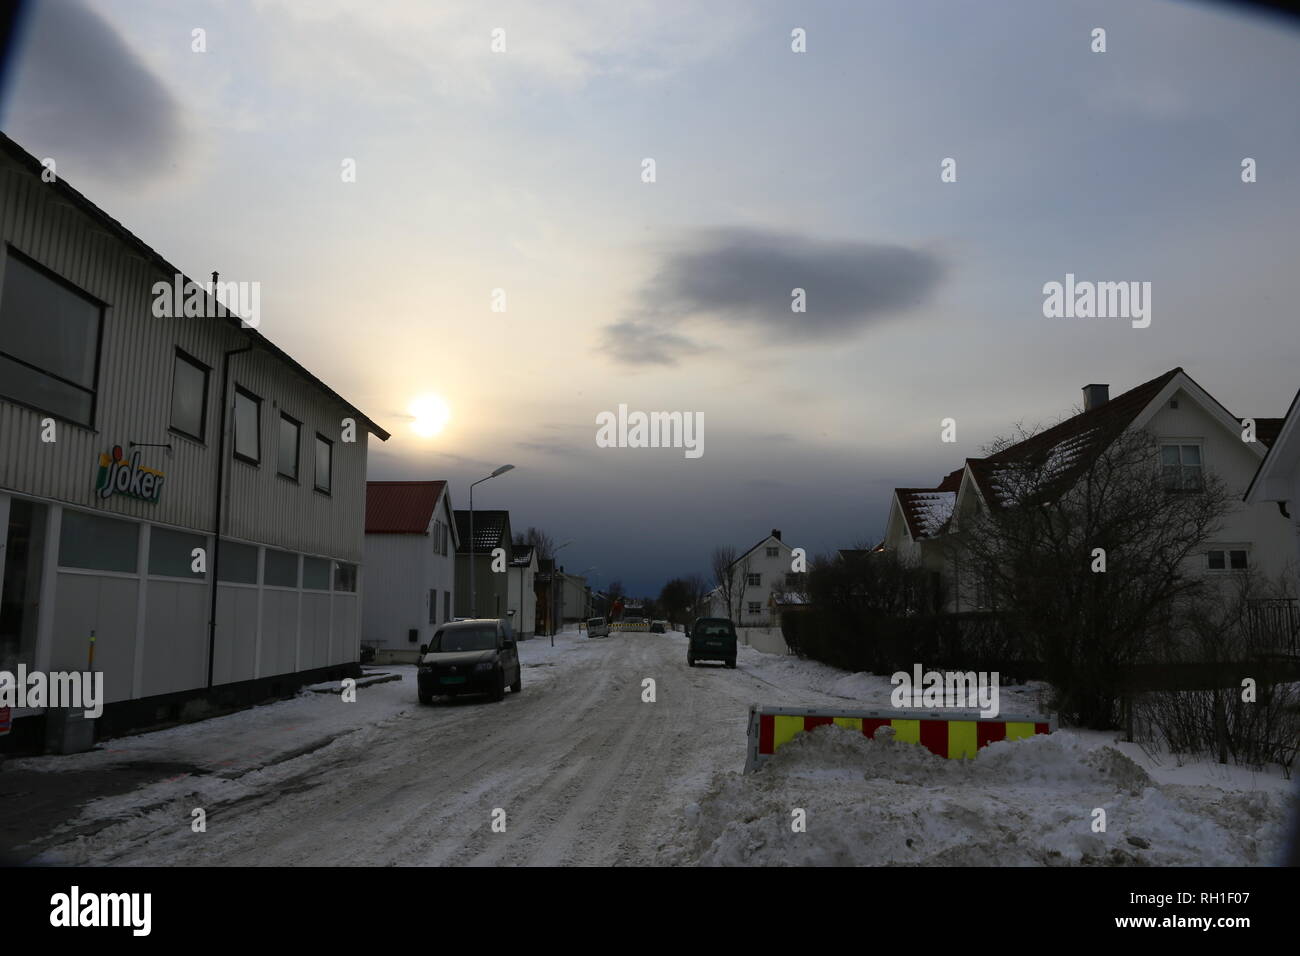 verschneite Straße in Bodö Norwegen. Im Hintergrund baut sich eine Schneefront auf. Gegenlicht, verschleierte Sonne Stock Photo